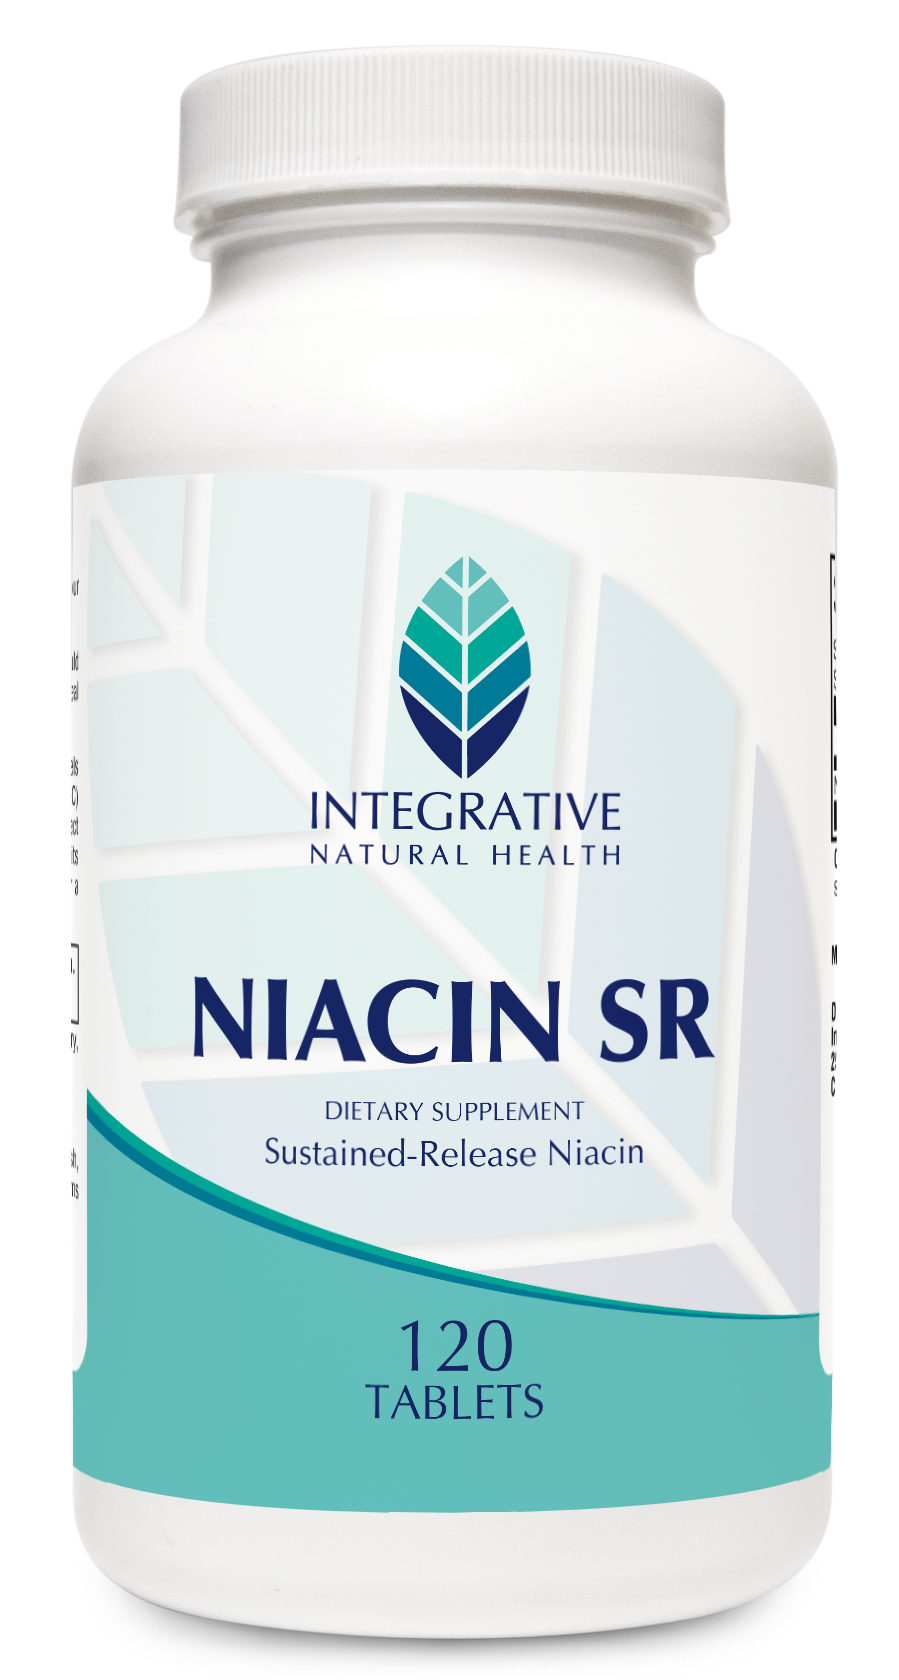 Niacin SR